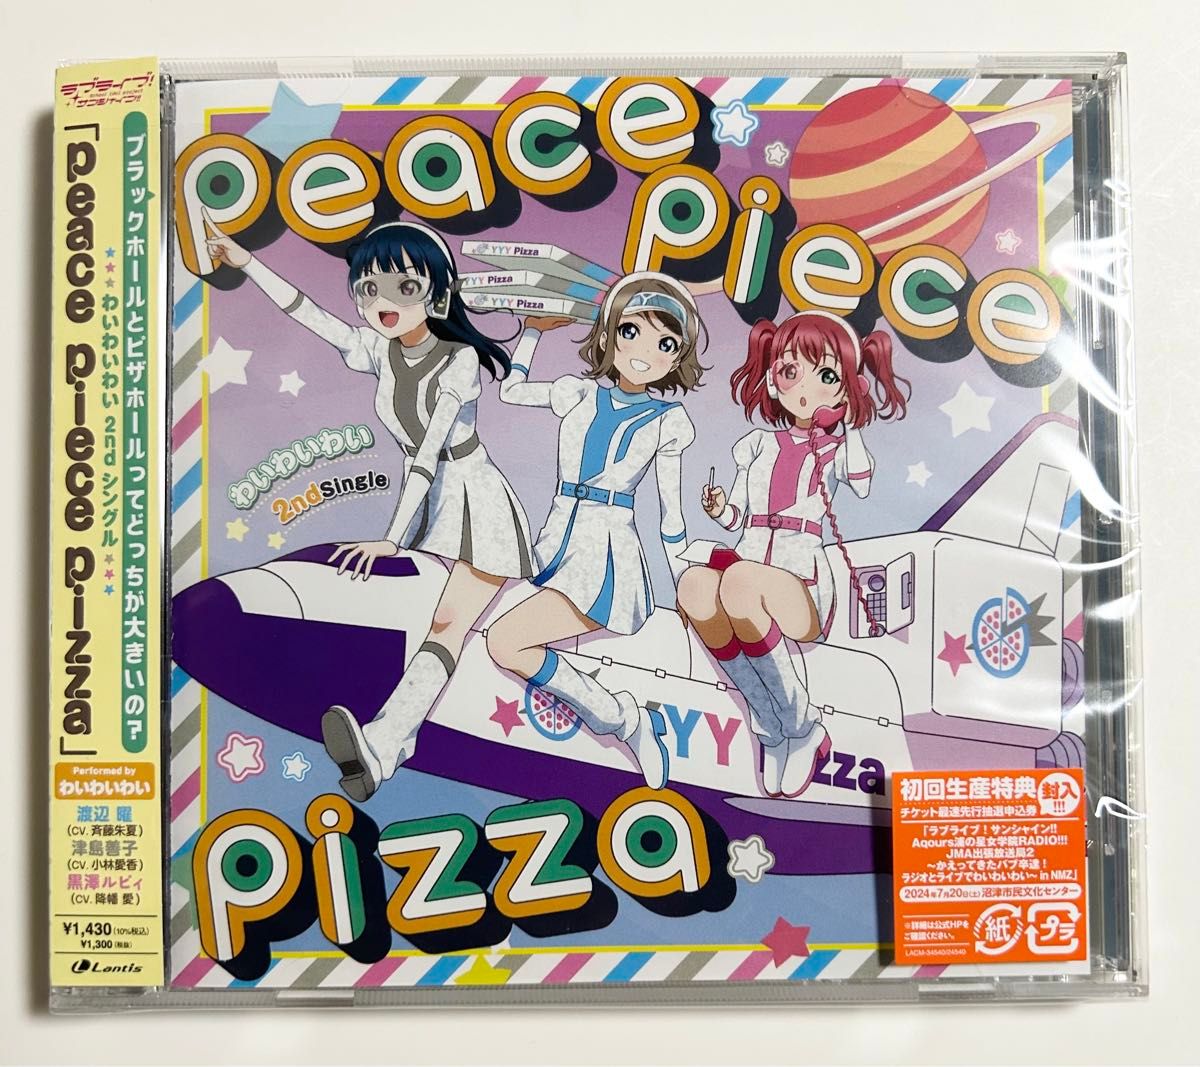 [シリアルコード未使用]Peace Piece Pizza 通常盤 わいわいわい2ndシングル ラブライブ!サンシャイン!!